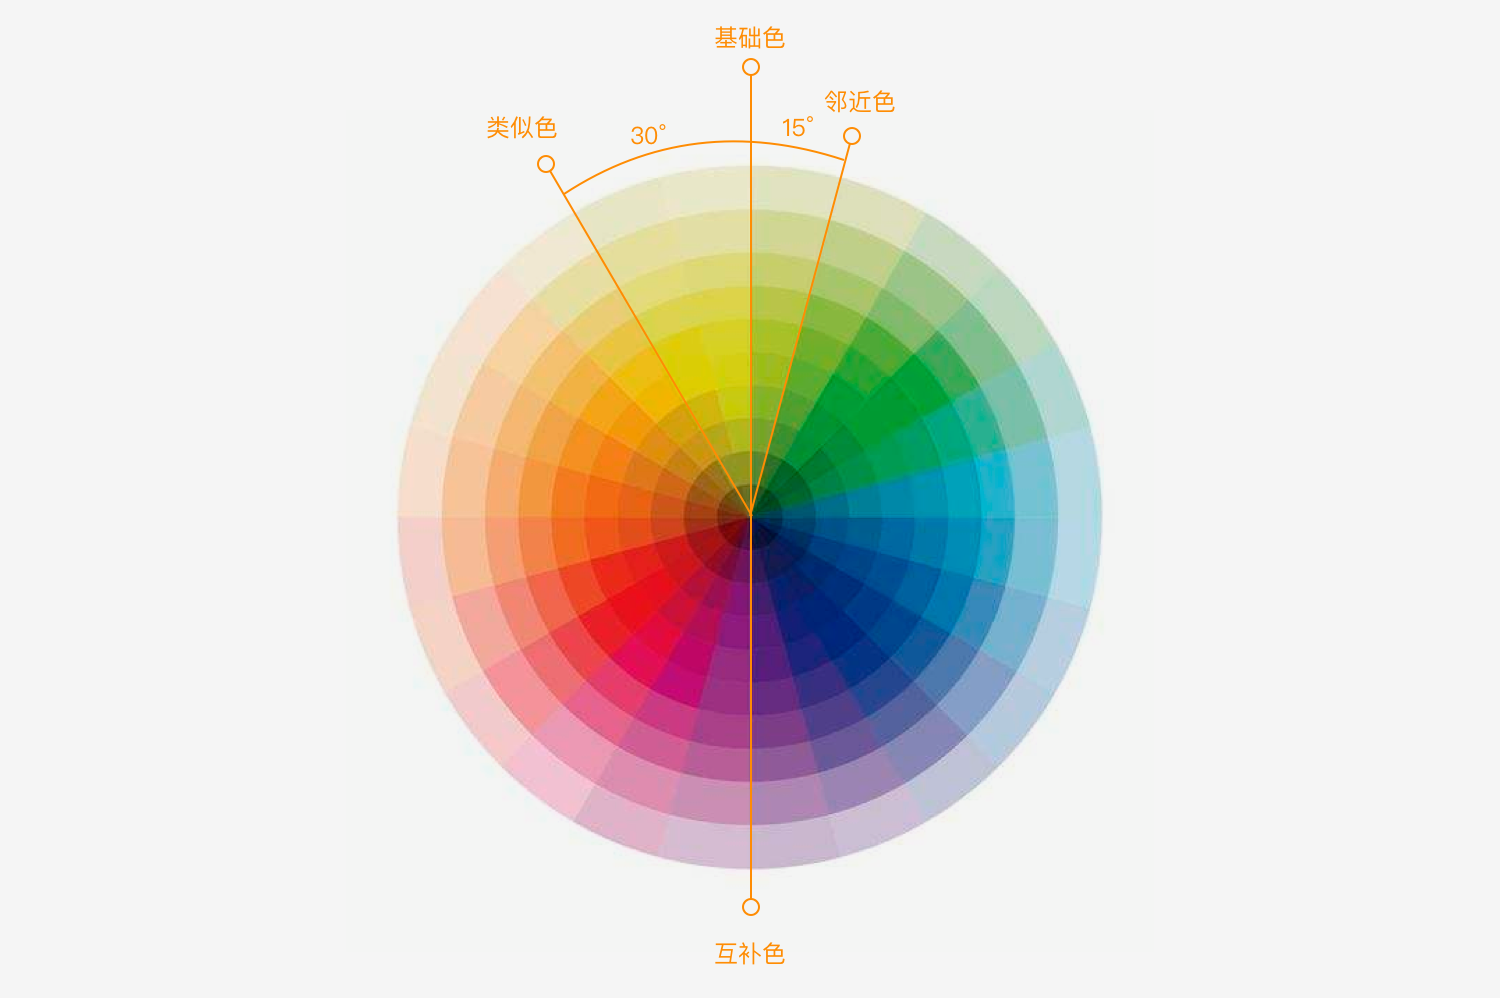 邻近色 色相差值15°以内的颜色为邻近色; 类似色 色相差值30°以内